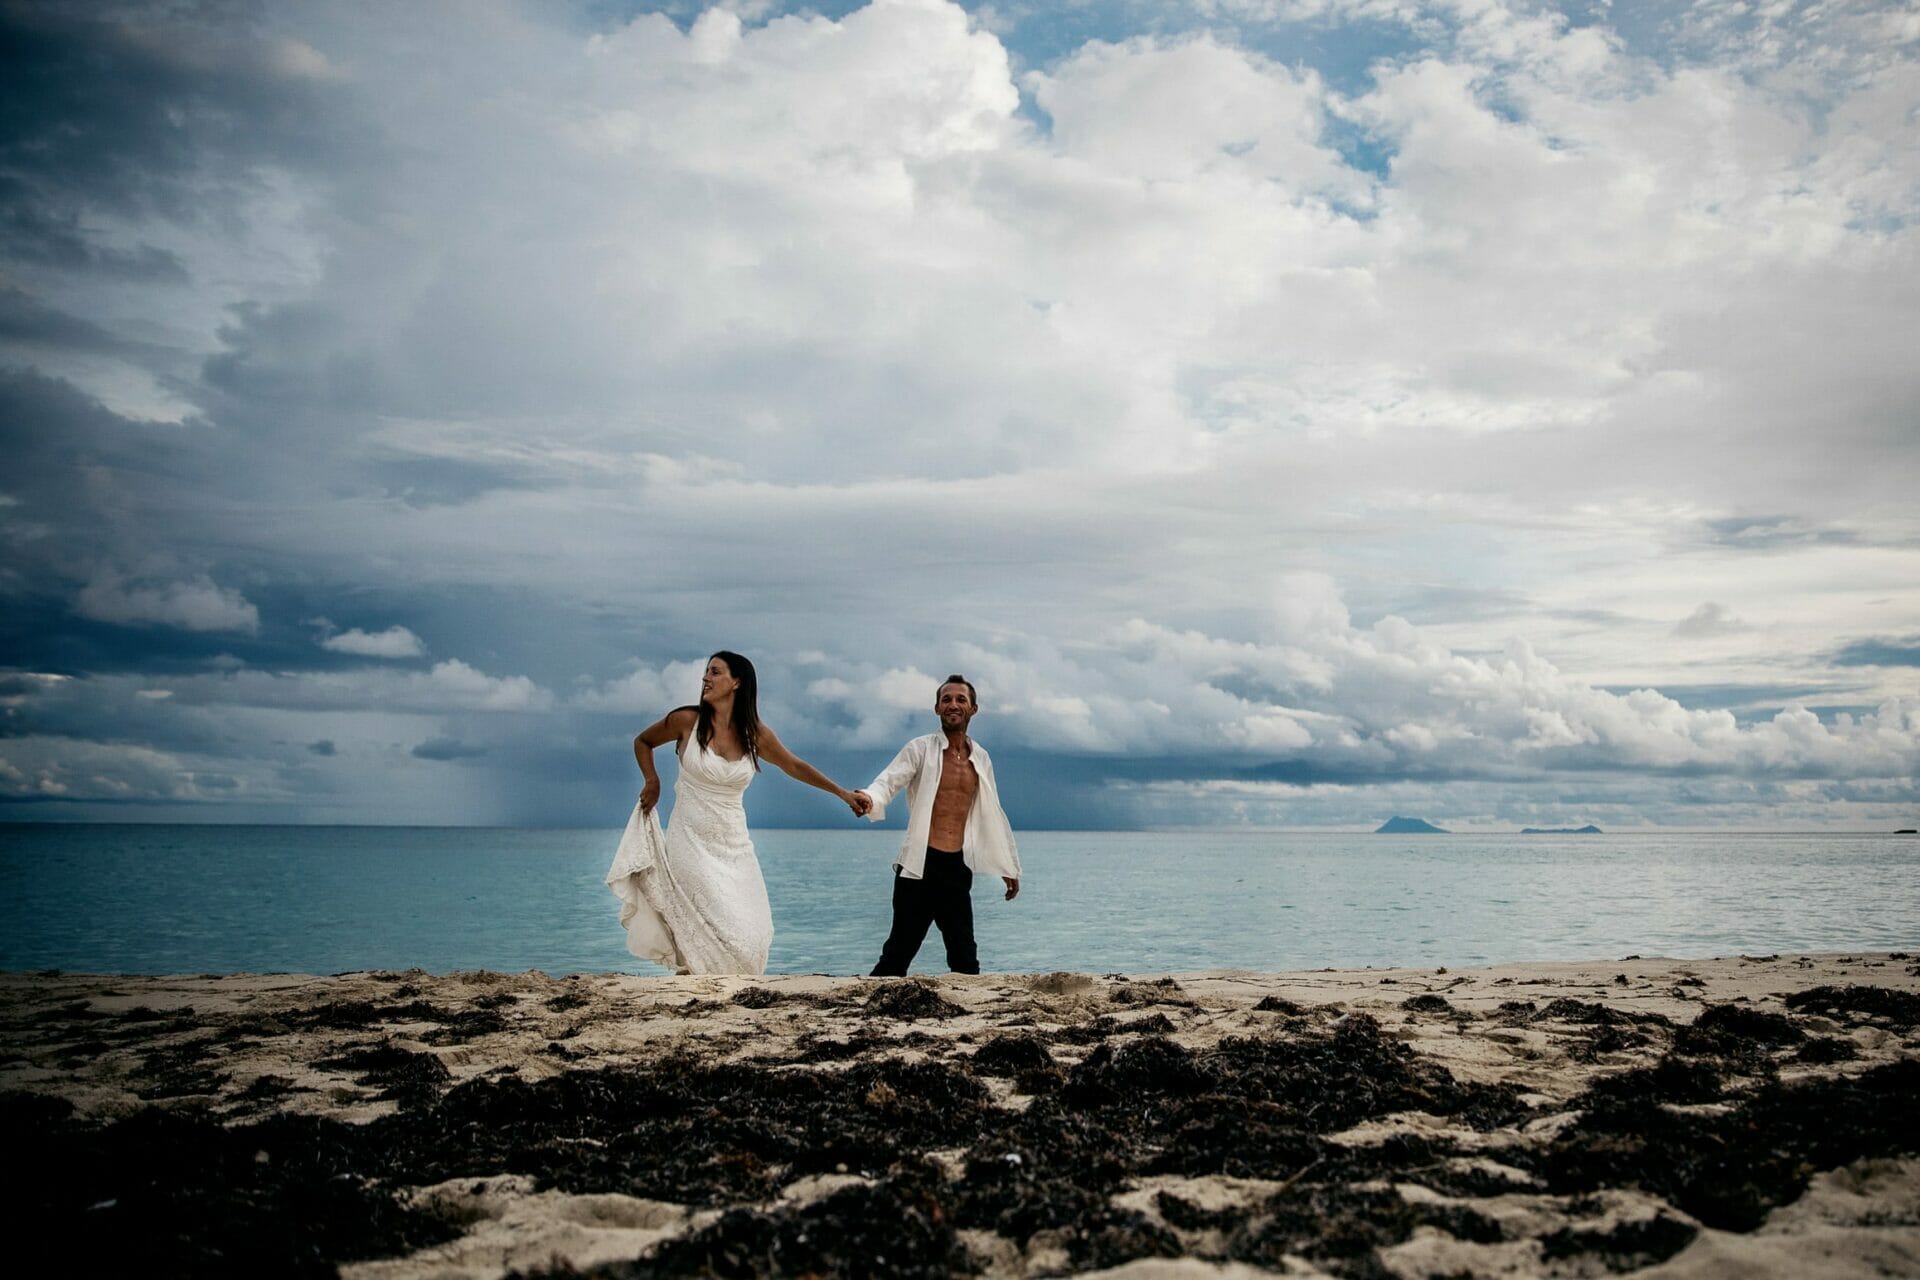 Mariage à St Barth. Castille ALMA photographe de mariage aux Antilles